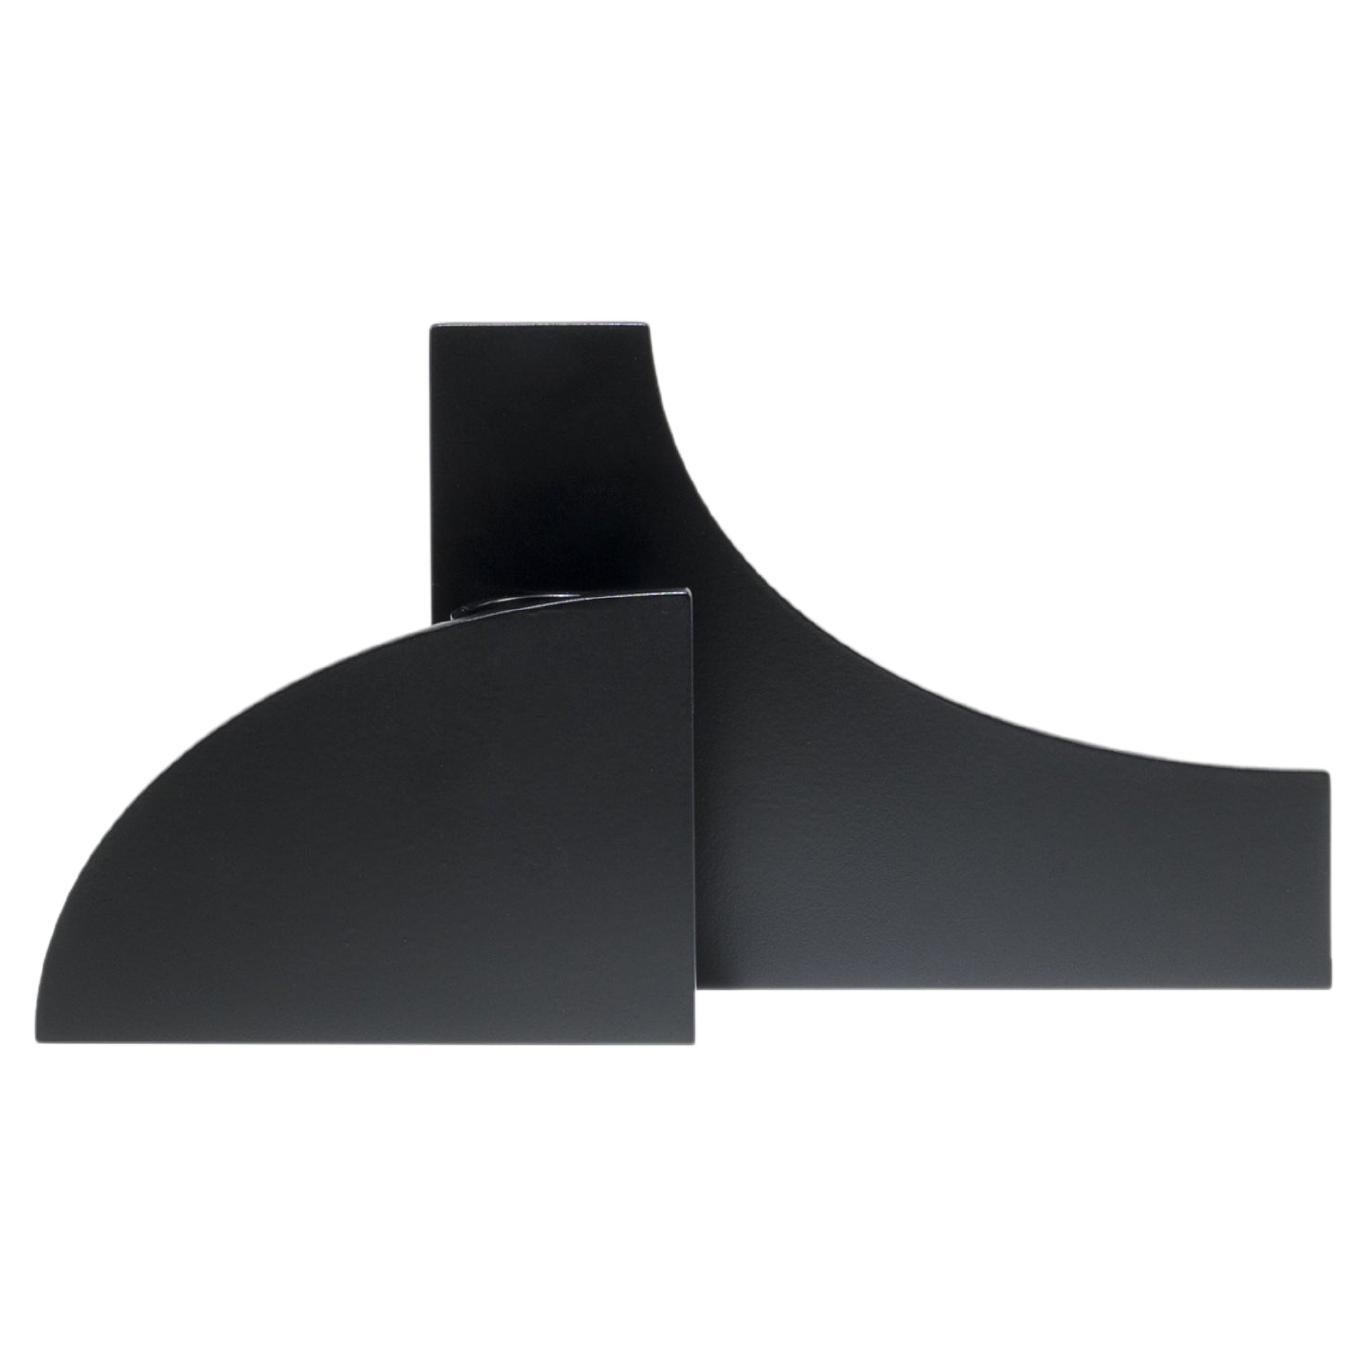 Vase sculptural contemporain en métal noir à découpes V02 de Millim Studio